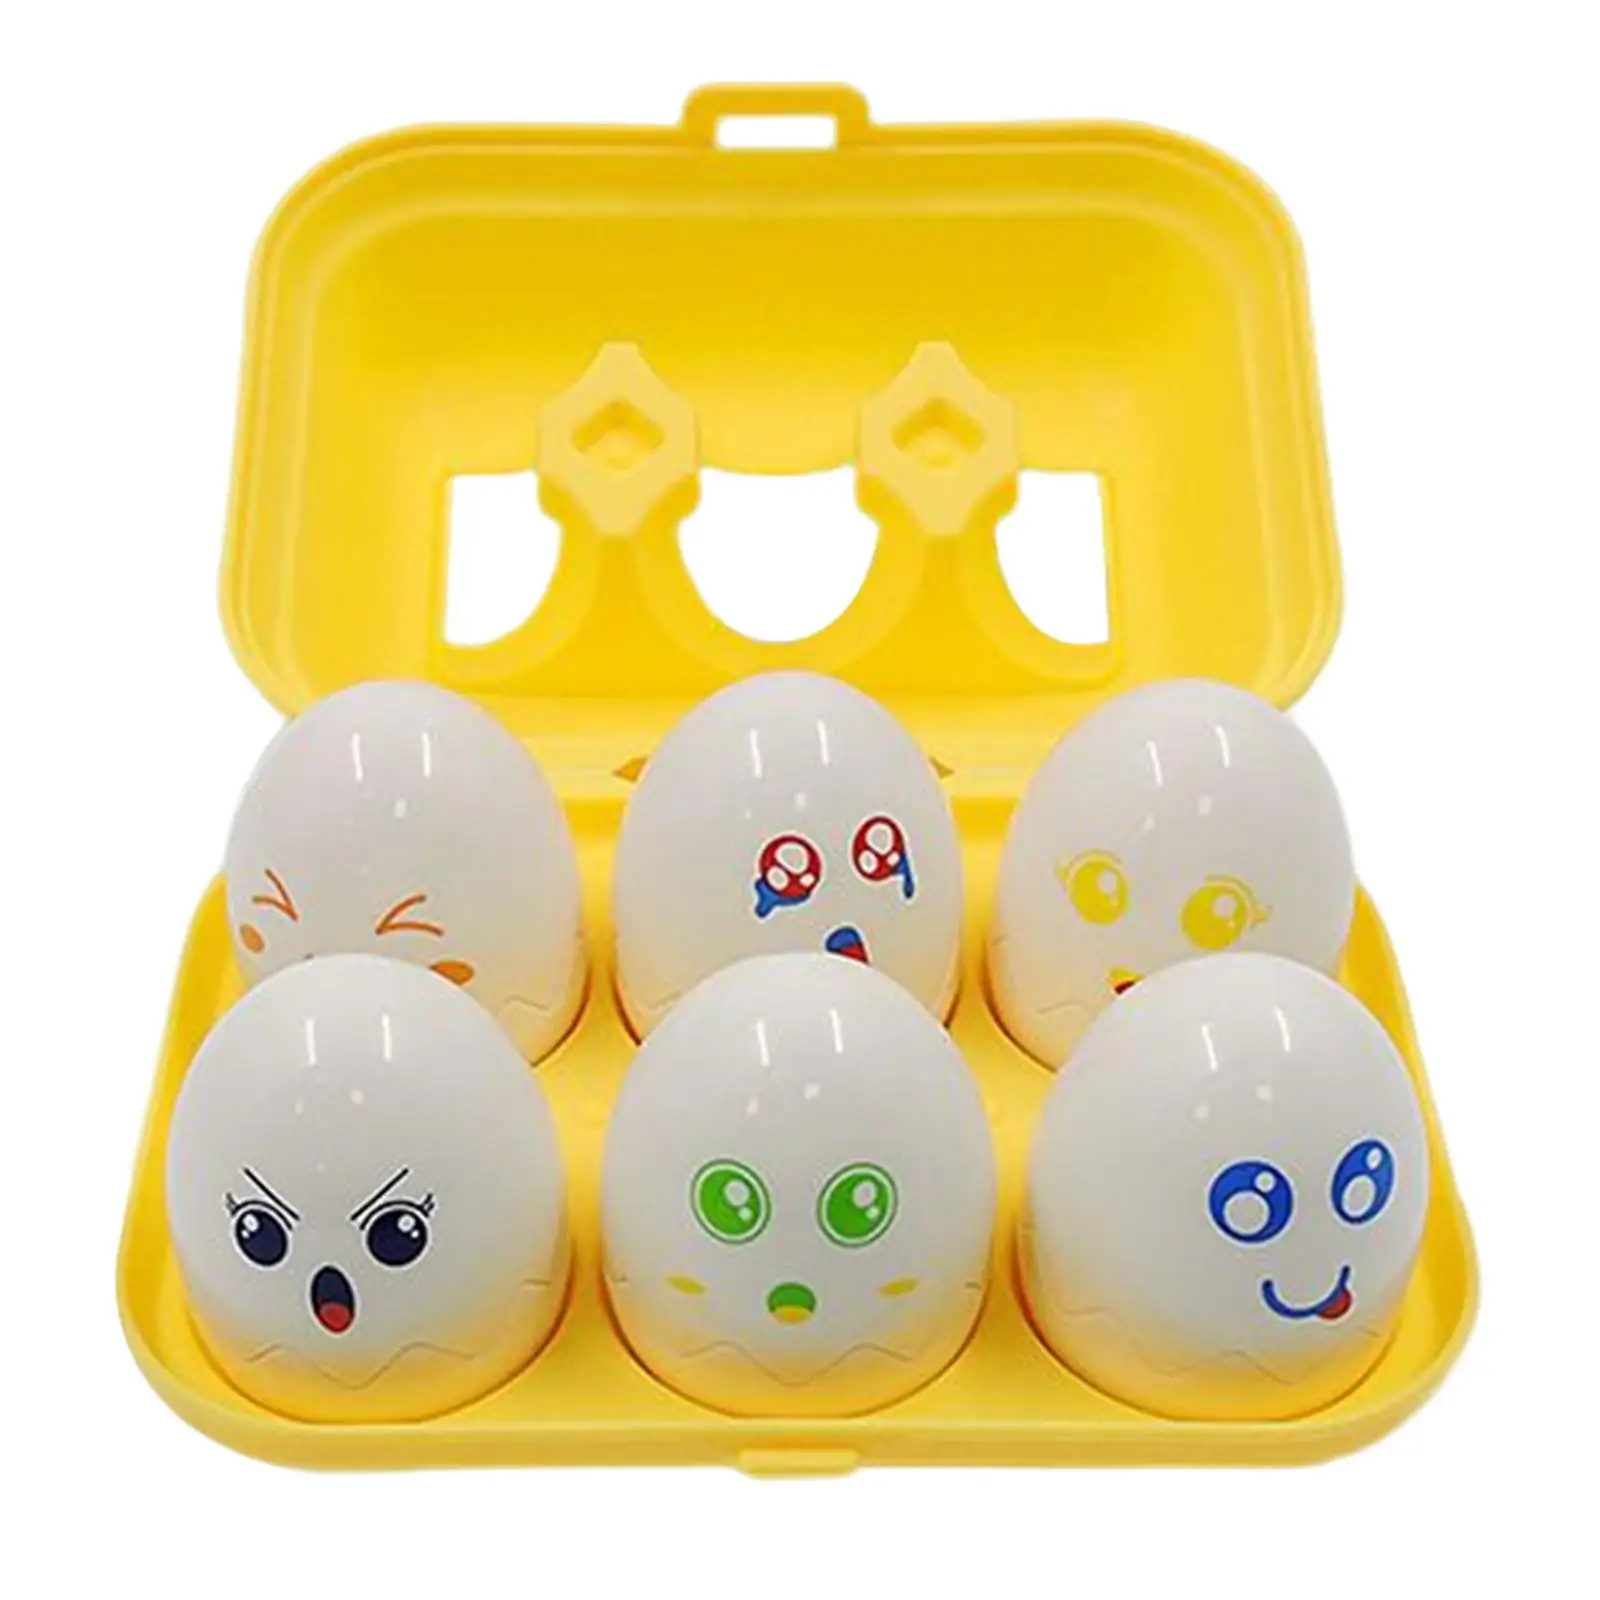 

6 штук сочетающихся яиц игрушка для мелкой моторики с ящиком для хранения яиц Дошкольная обучающая игрушка пасхальные яйца игрушки для дошкольников